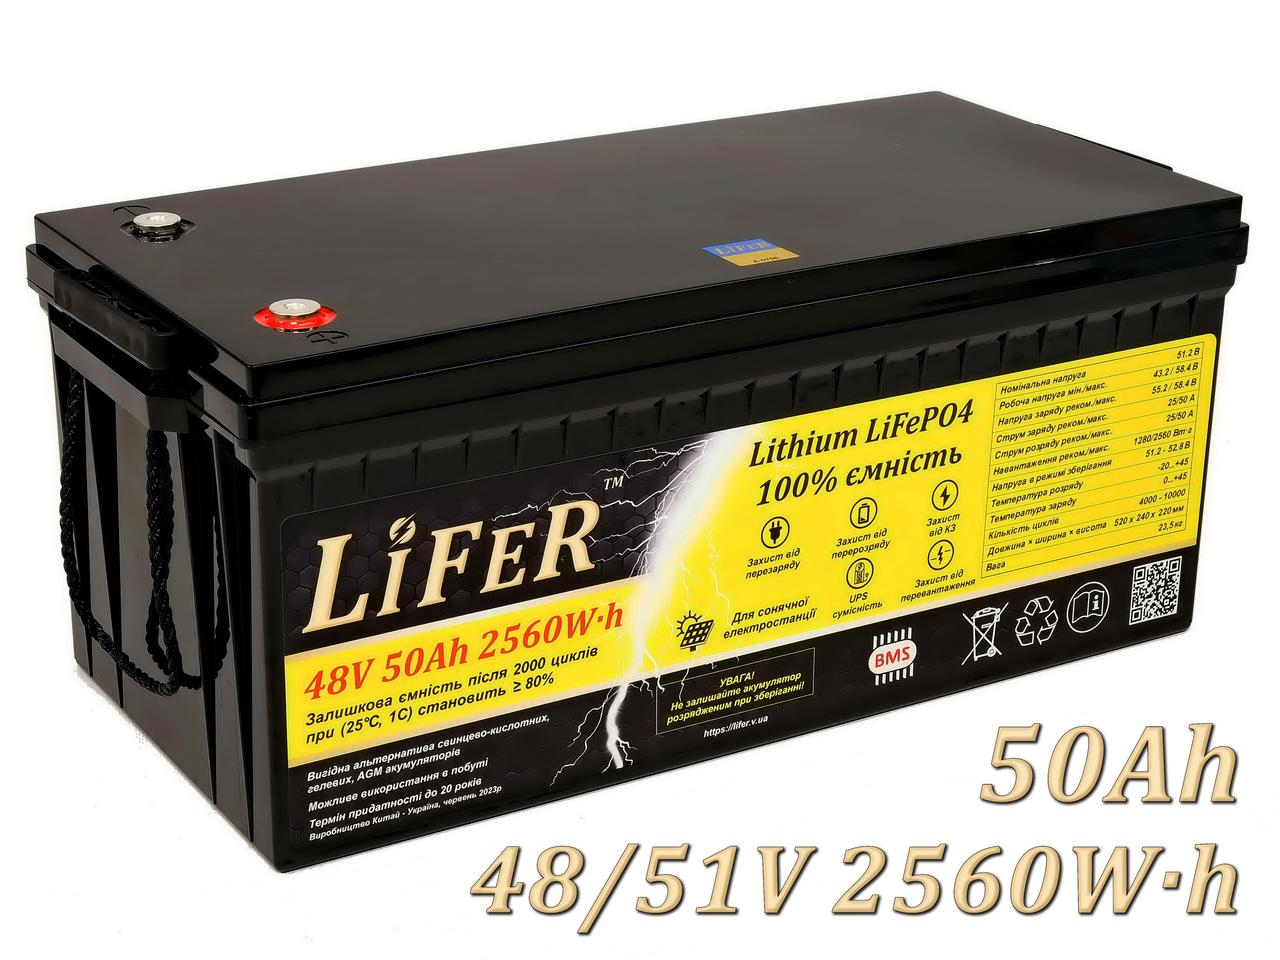 Літієвий акумулятор LiFeR 48V 50Ah 2560W·h LiFePO4. Тяговий акумулятор для інвертора.